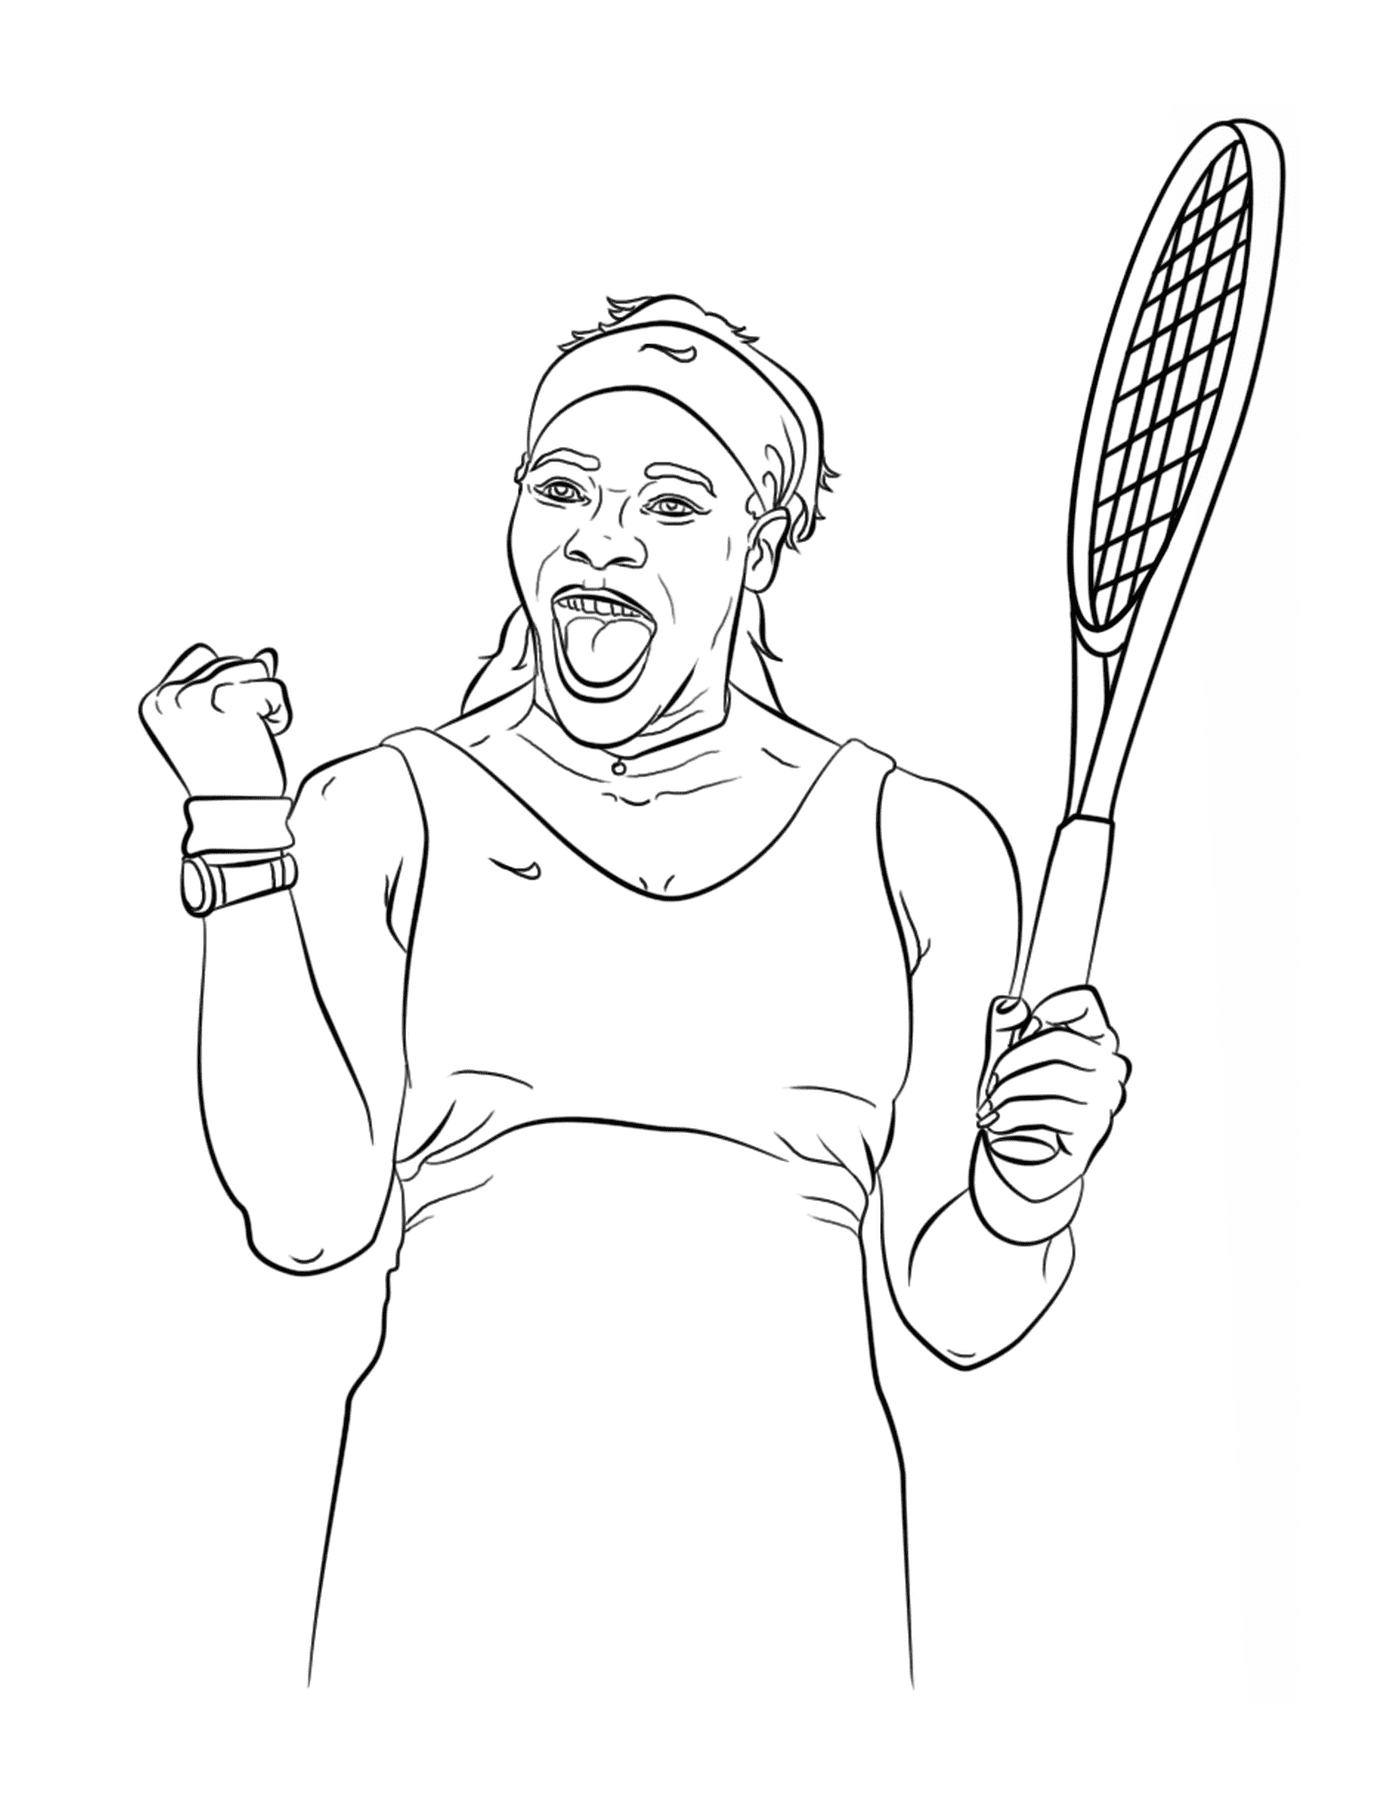  Serena Williams con su raqueta de nieve 